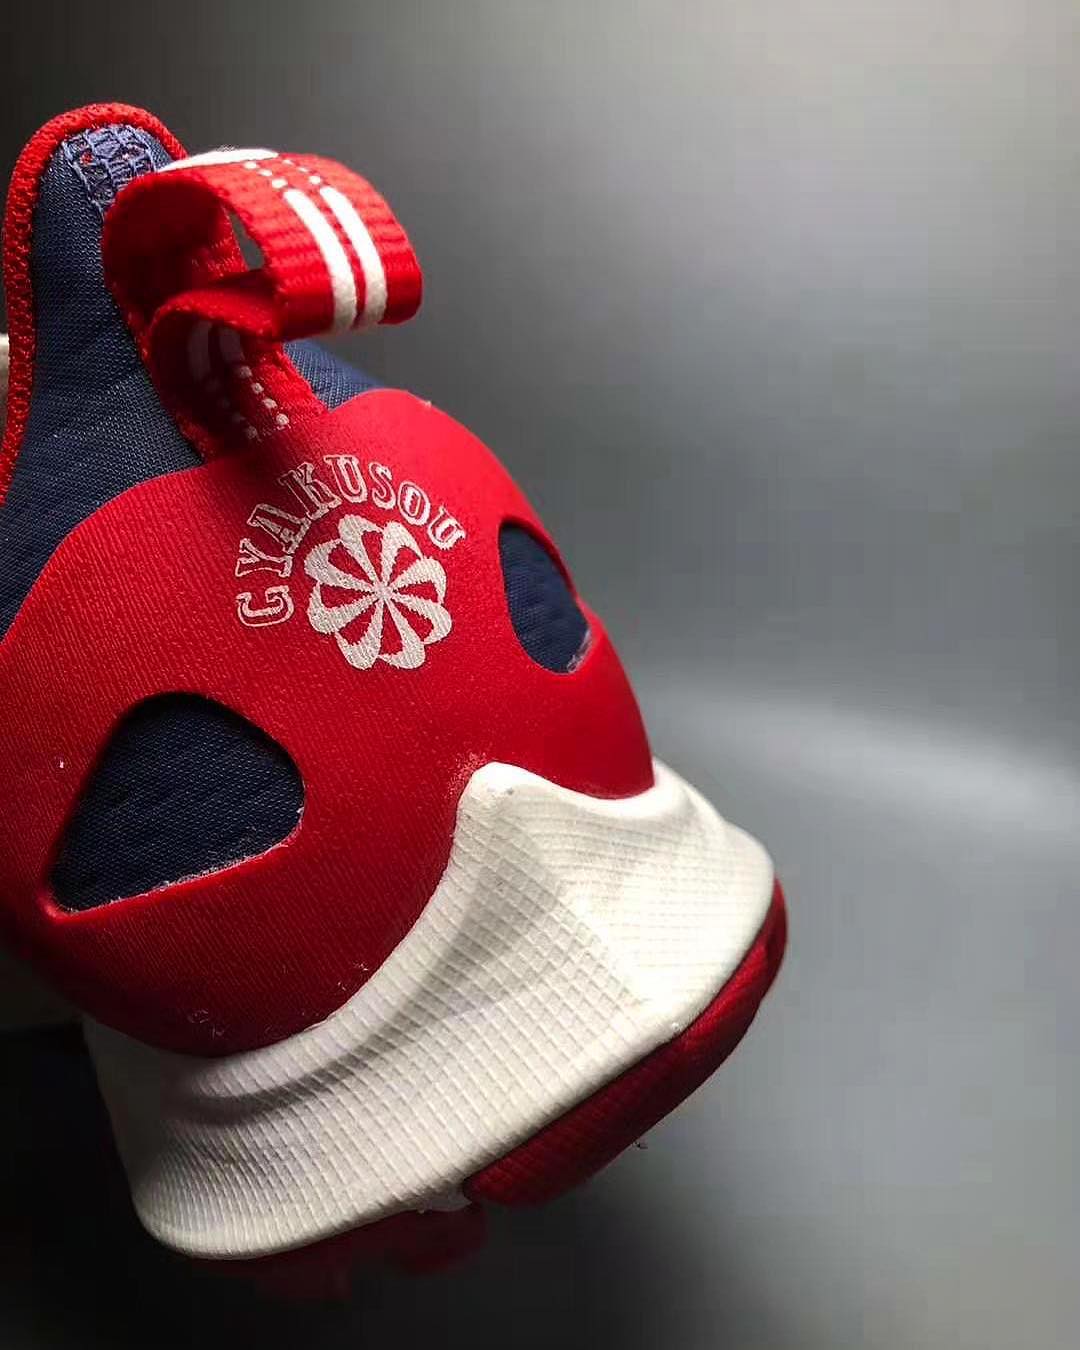 Gyakusou x Nike 2019 Red/Navy (Heel)